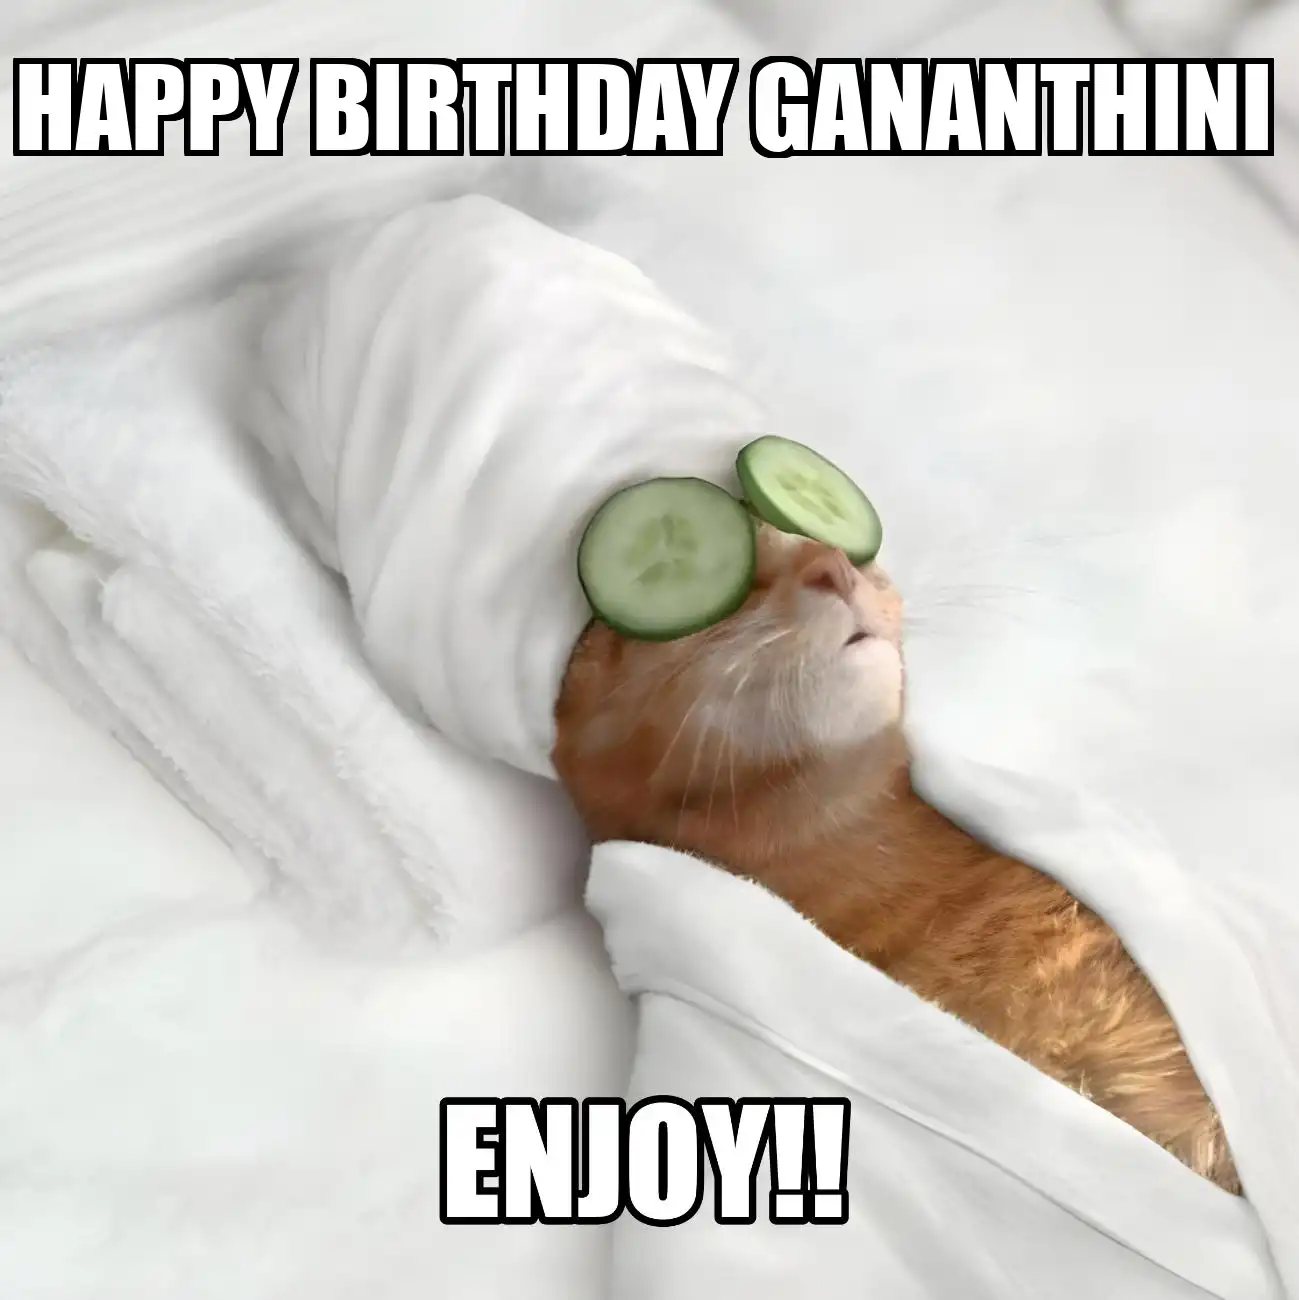 Happy Birthday Gananthini Enjoy Cat Meme